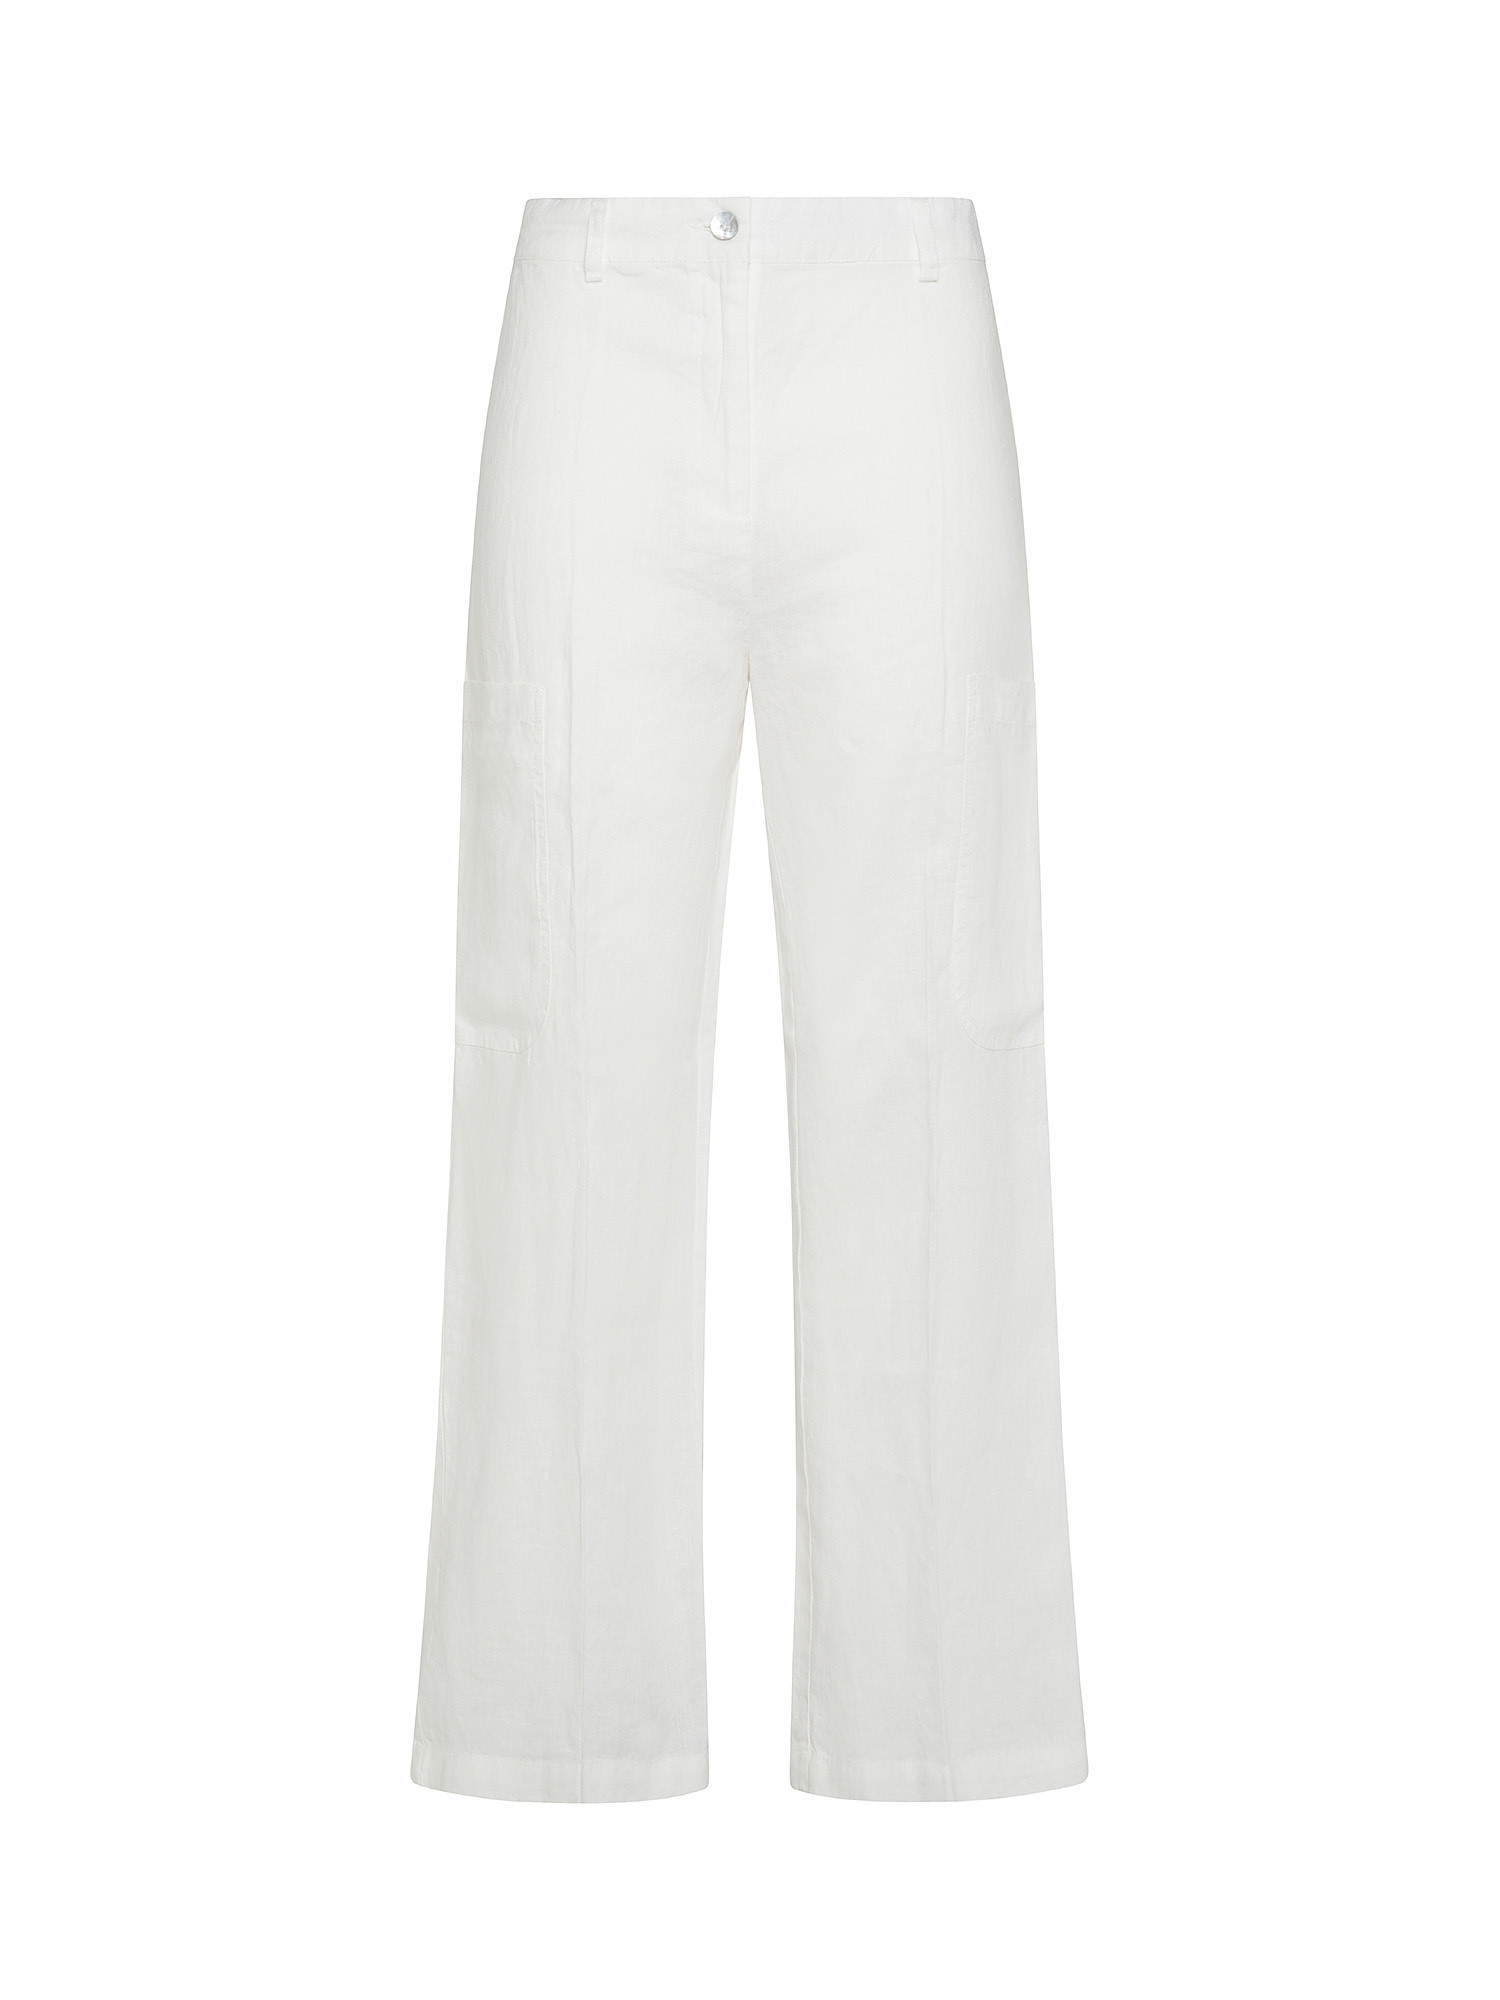 Koan - Pantaloni cargo in lino, Bianco, large image number 0